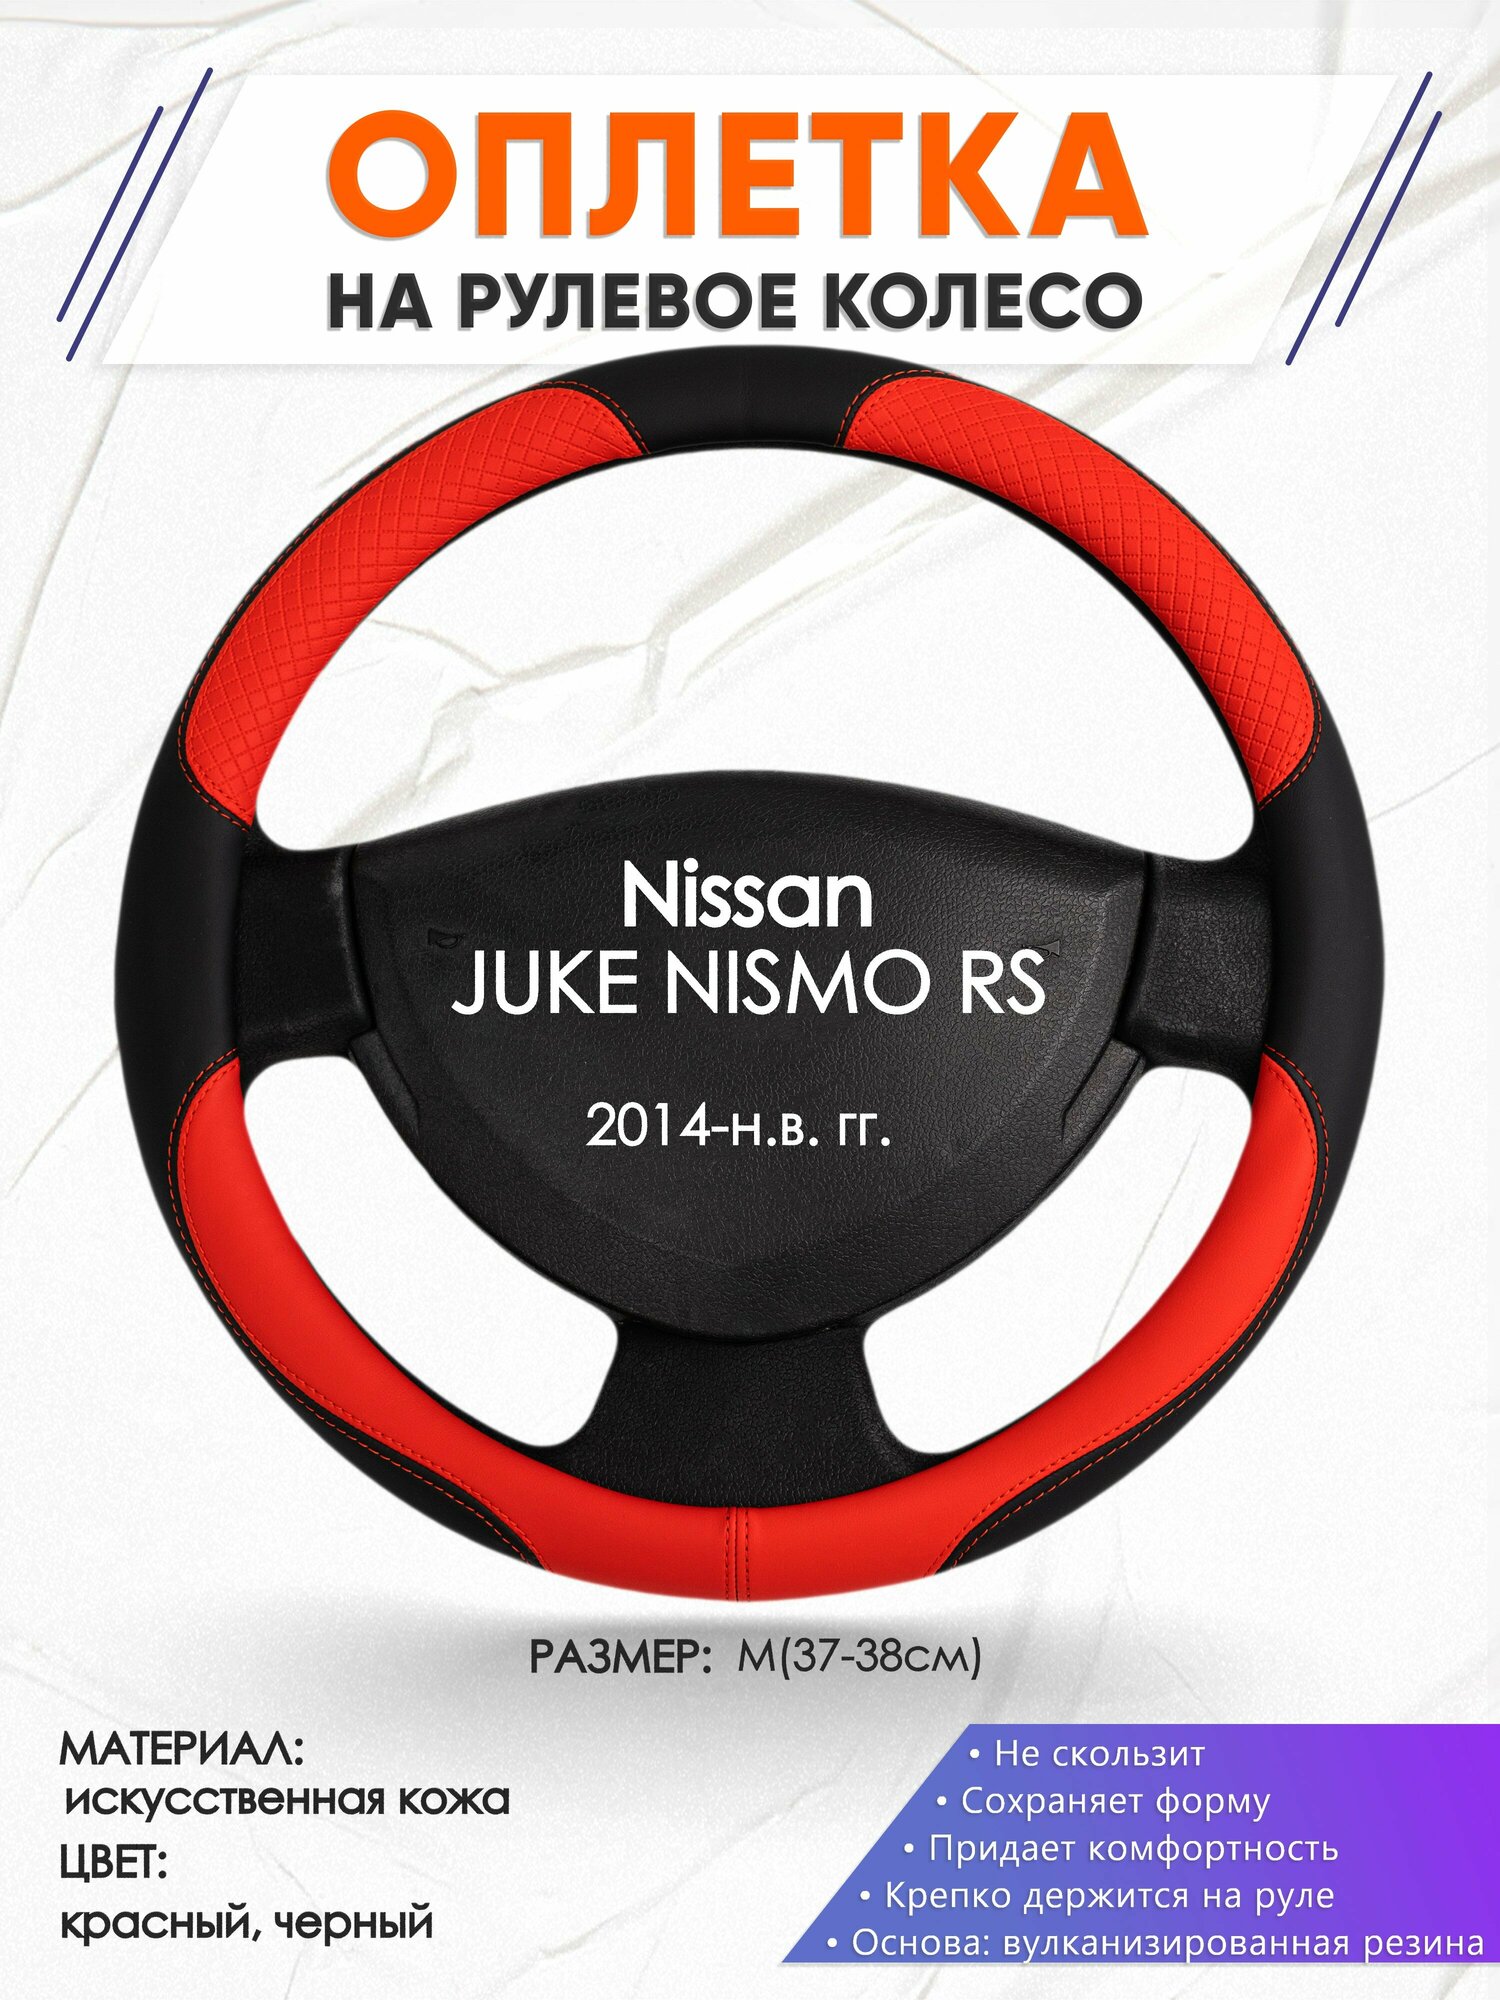 Оплетка наруль для Nissan JUKE NISMO RS(Ниссан Жук Нисмо) 2014-н. в. годов выпуска, размер M(37-38см), Искусственная кожа 05